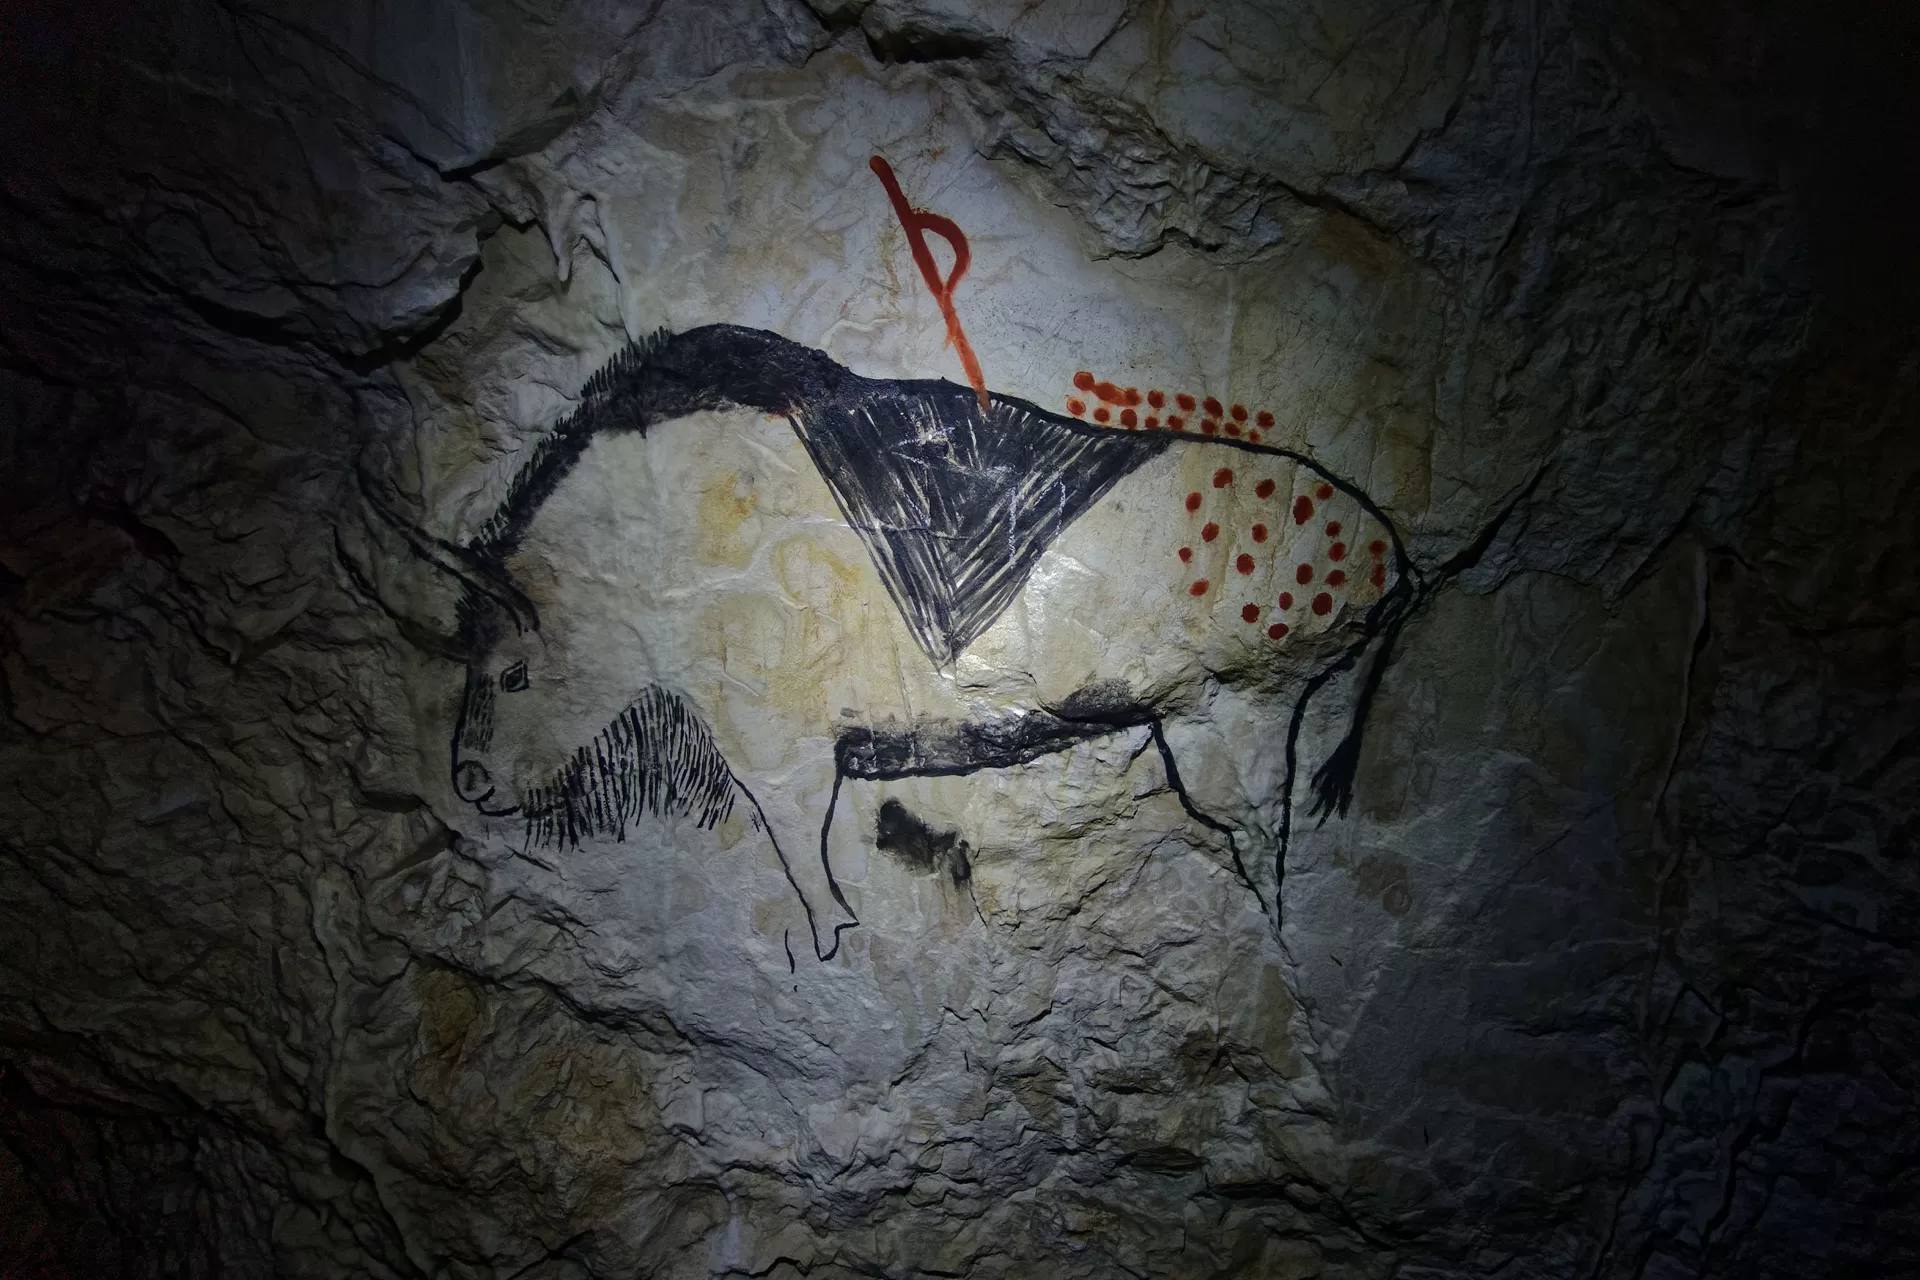 Höhle von Niaux, Tarascon-sur-Ariège, France. Höhlenkunst, die ca. 13.000 Jahre alten Höhlenzeichnungen sind in schwarzer Strichzeichnung ausgeführt und zeigen die großen Säugetiere der prähistorischen Fauna.